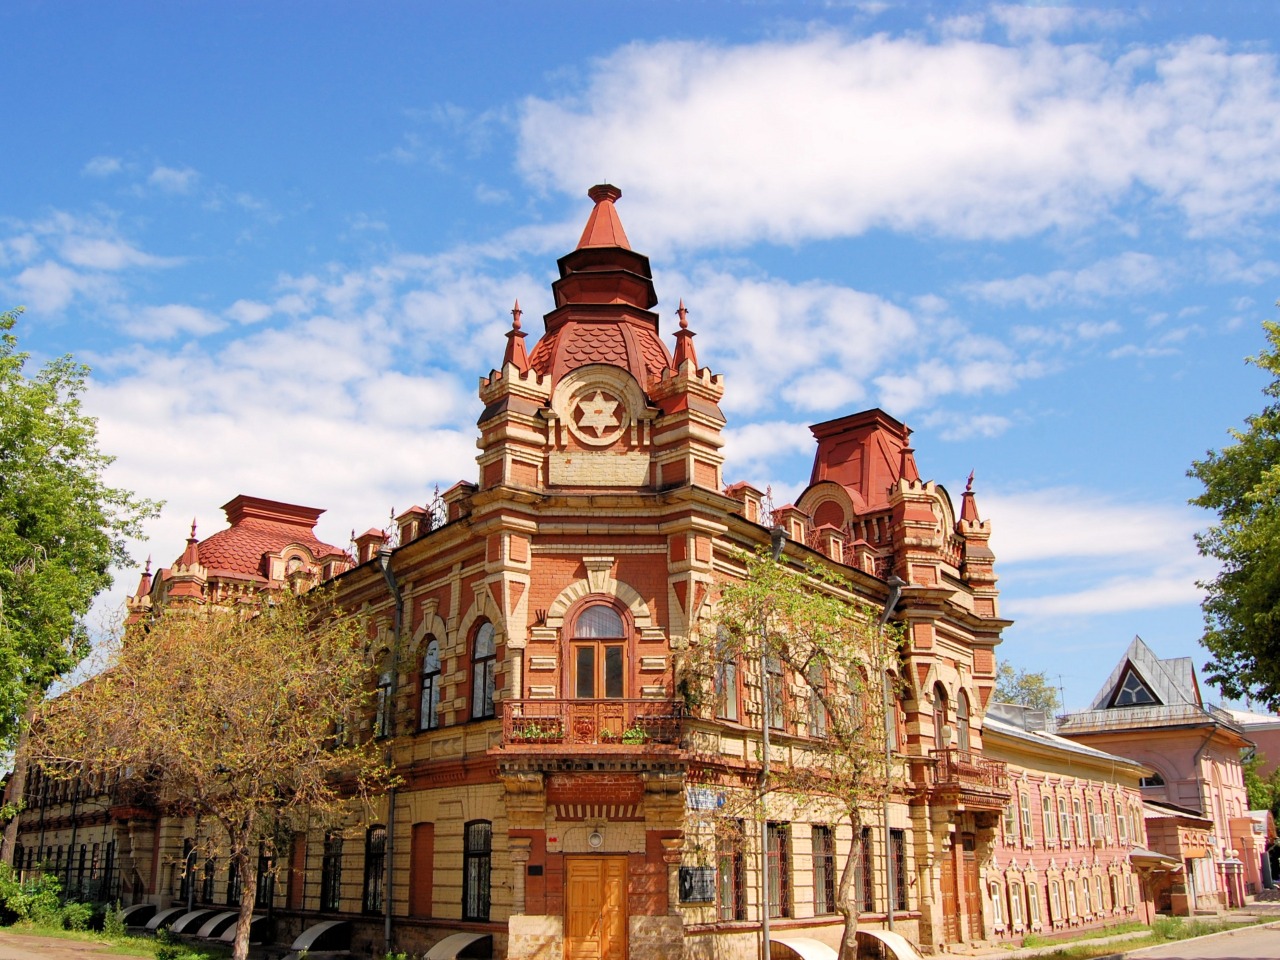 Прогулка по историческому центру Иркутска | Цена 10200₽, отзывы, описание экскурсии